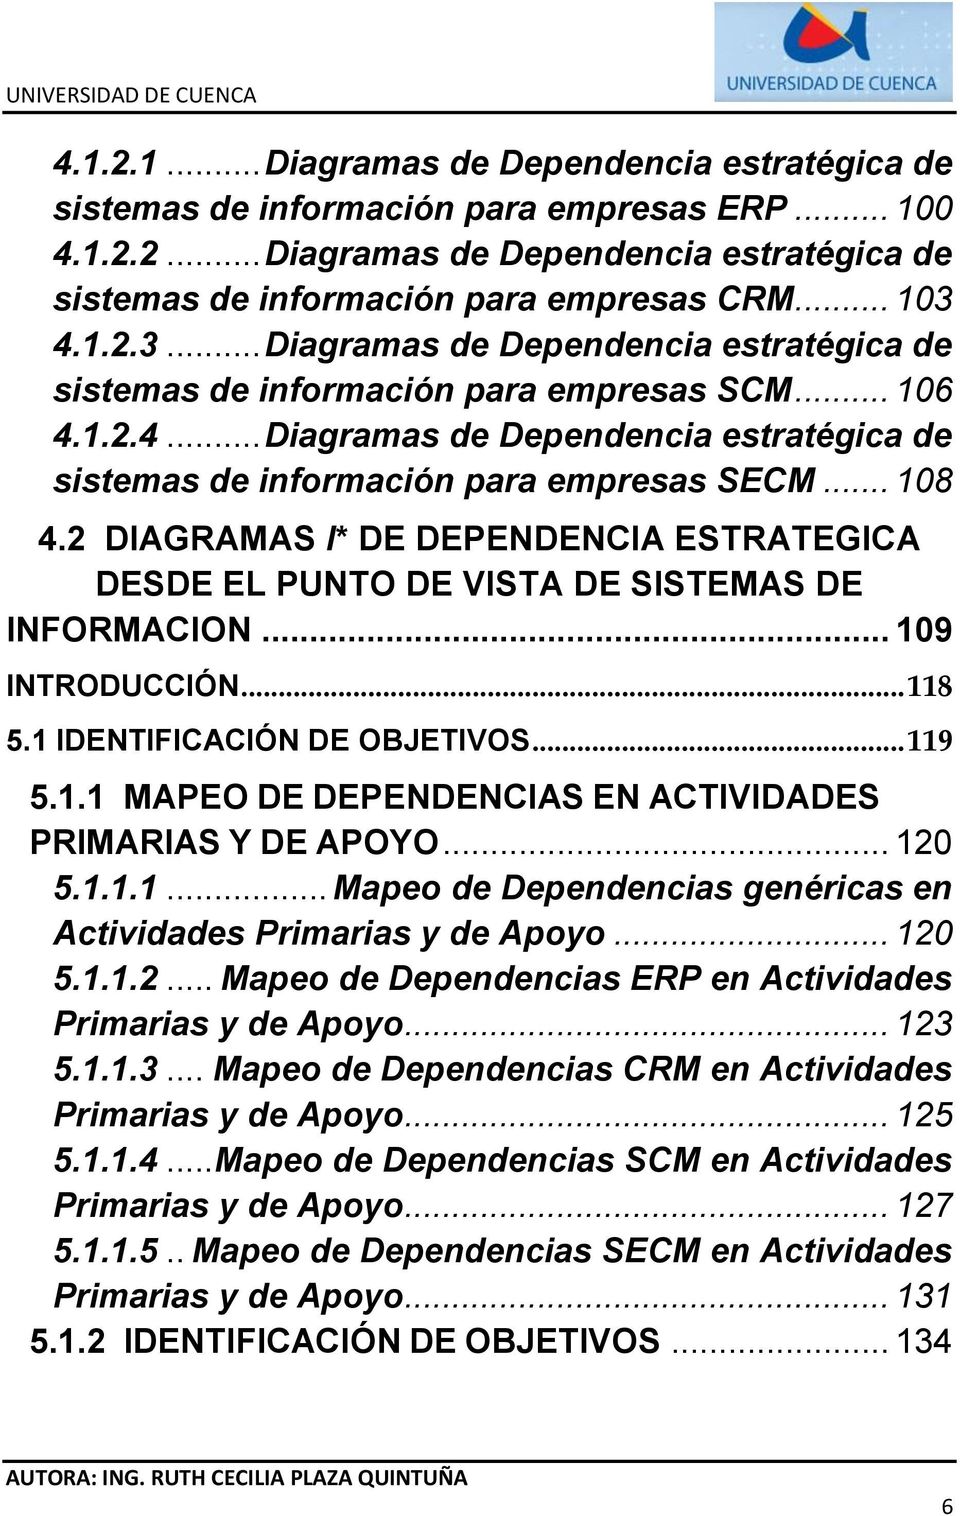 2 DIAGRAMAS I* DE DEPENDENCIA ESTRATEGICA DESDE EL PUNTO DE VISTA DE SISTEMAS DE INFORMACION... 109 INTRODUCCIÓN... 118 5.1 IDENTIFICACIÓN DE OBJETIVOS... 119 5.1.1 MAPEO DE DEPENDENCIAS EN ACTIVIDADES PRIMARIAS Y DE APOYO.